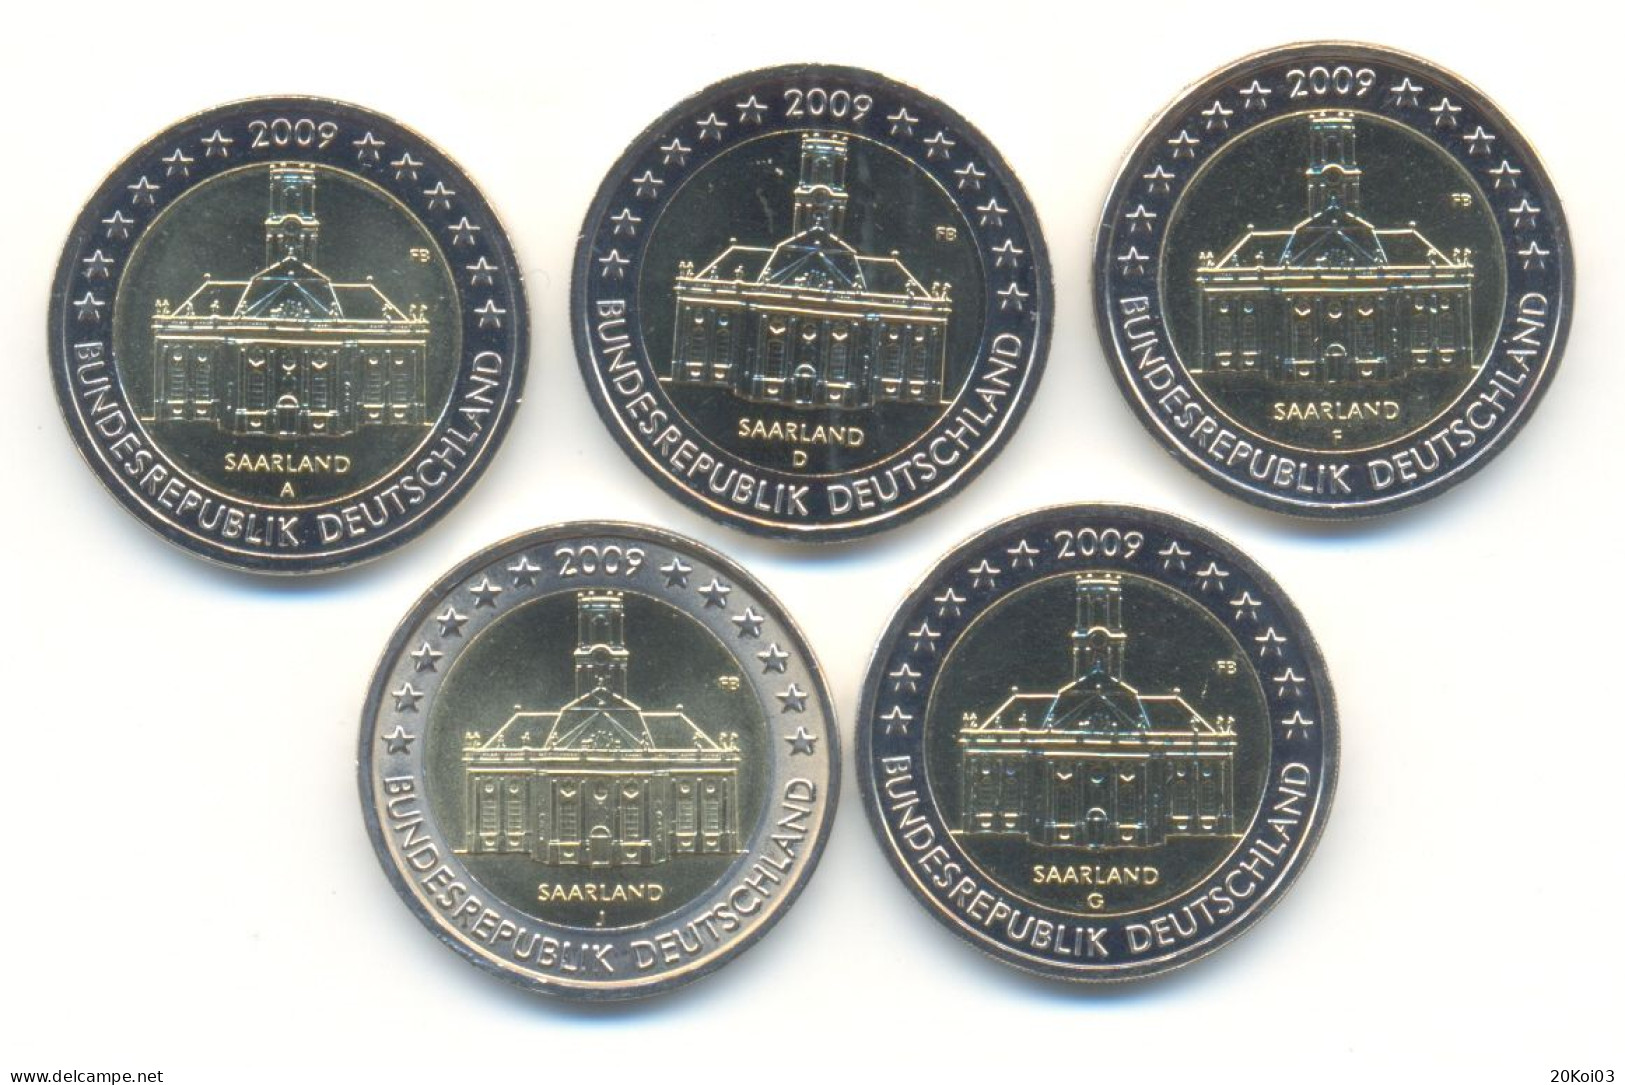 5x2€ Euros Commémorative Allemagne 2009, SUP (jamais Utilisées, Never Used) - Germany